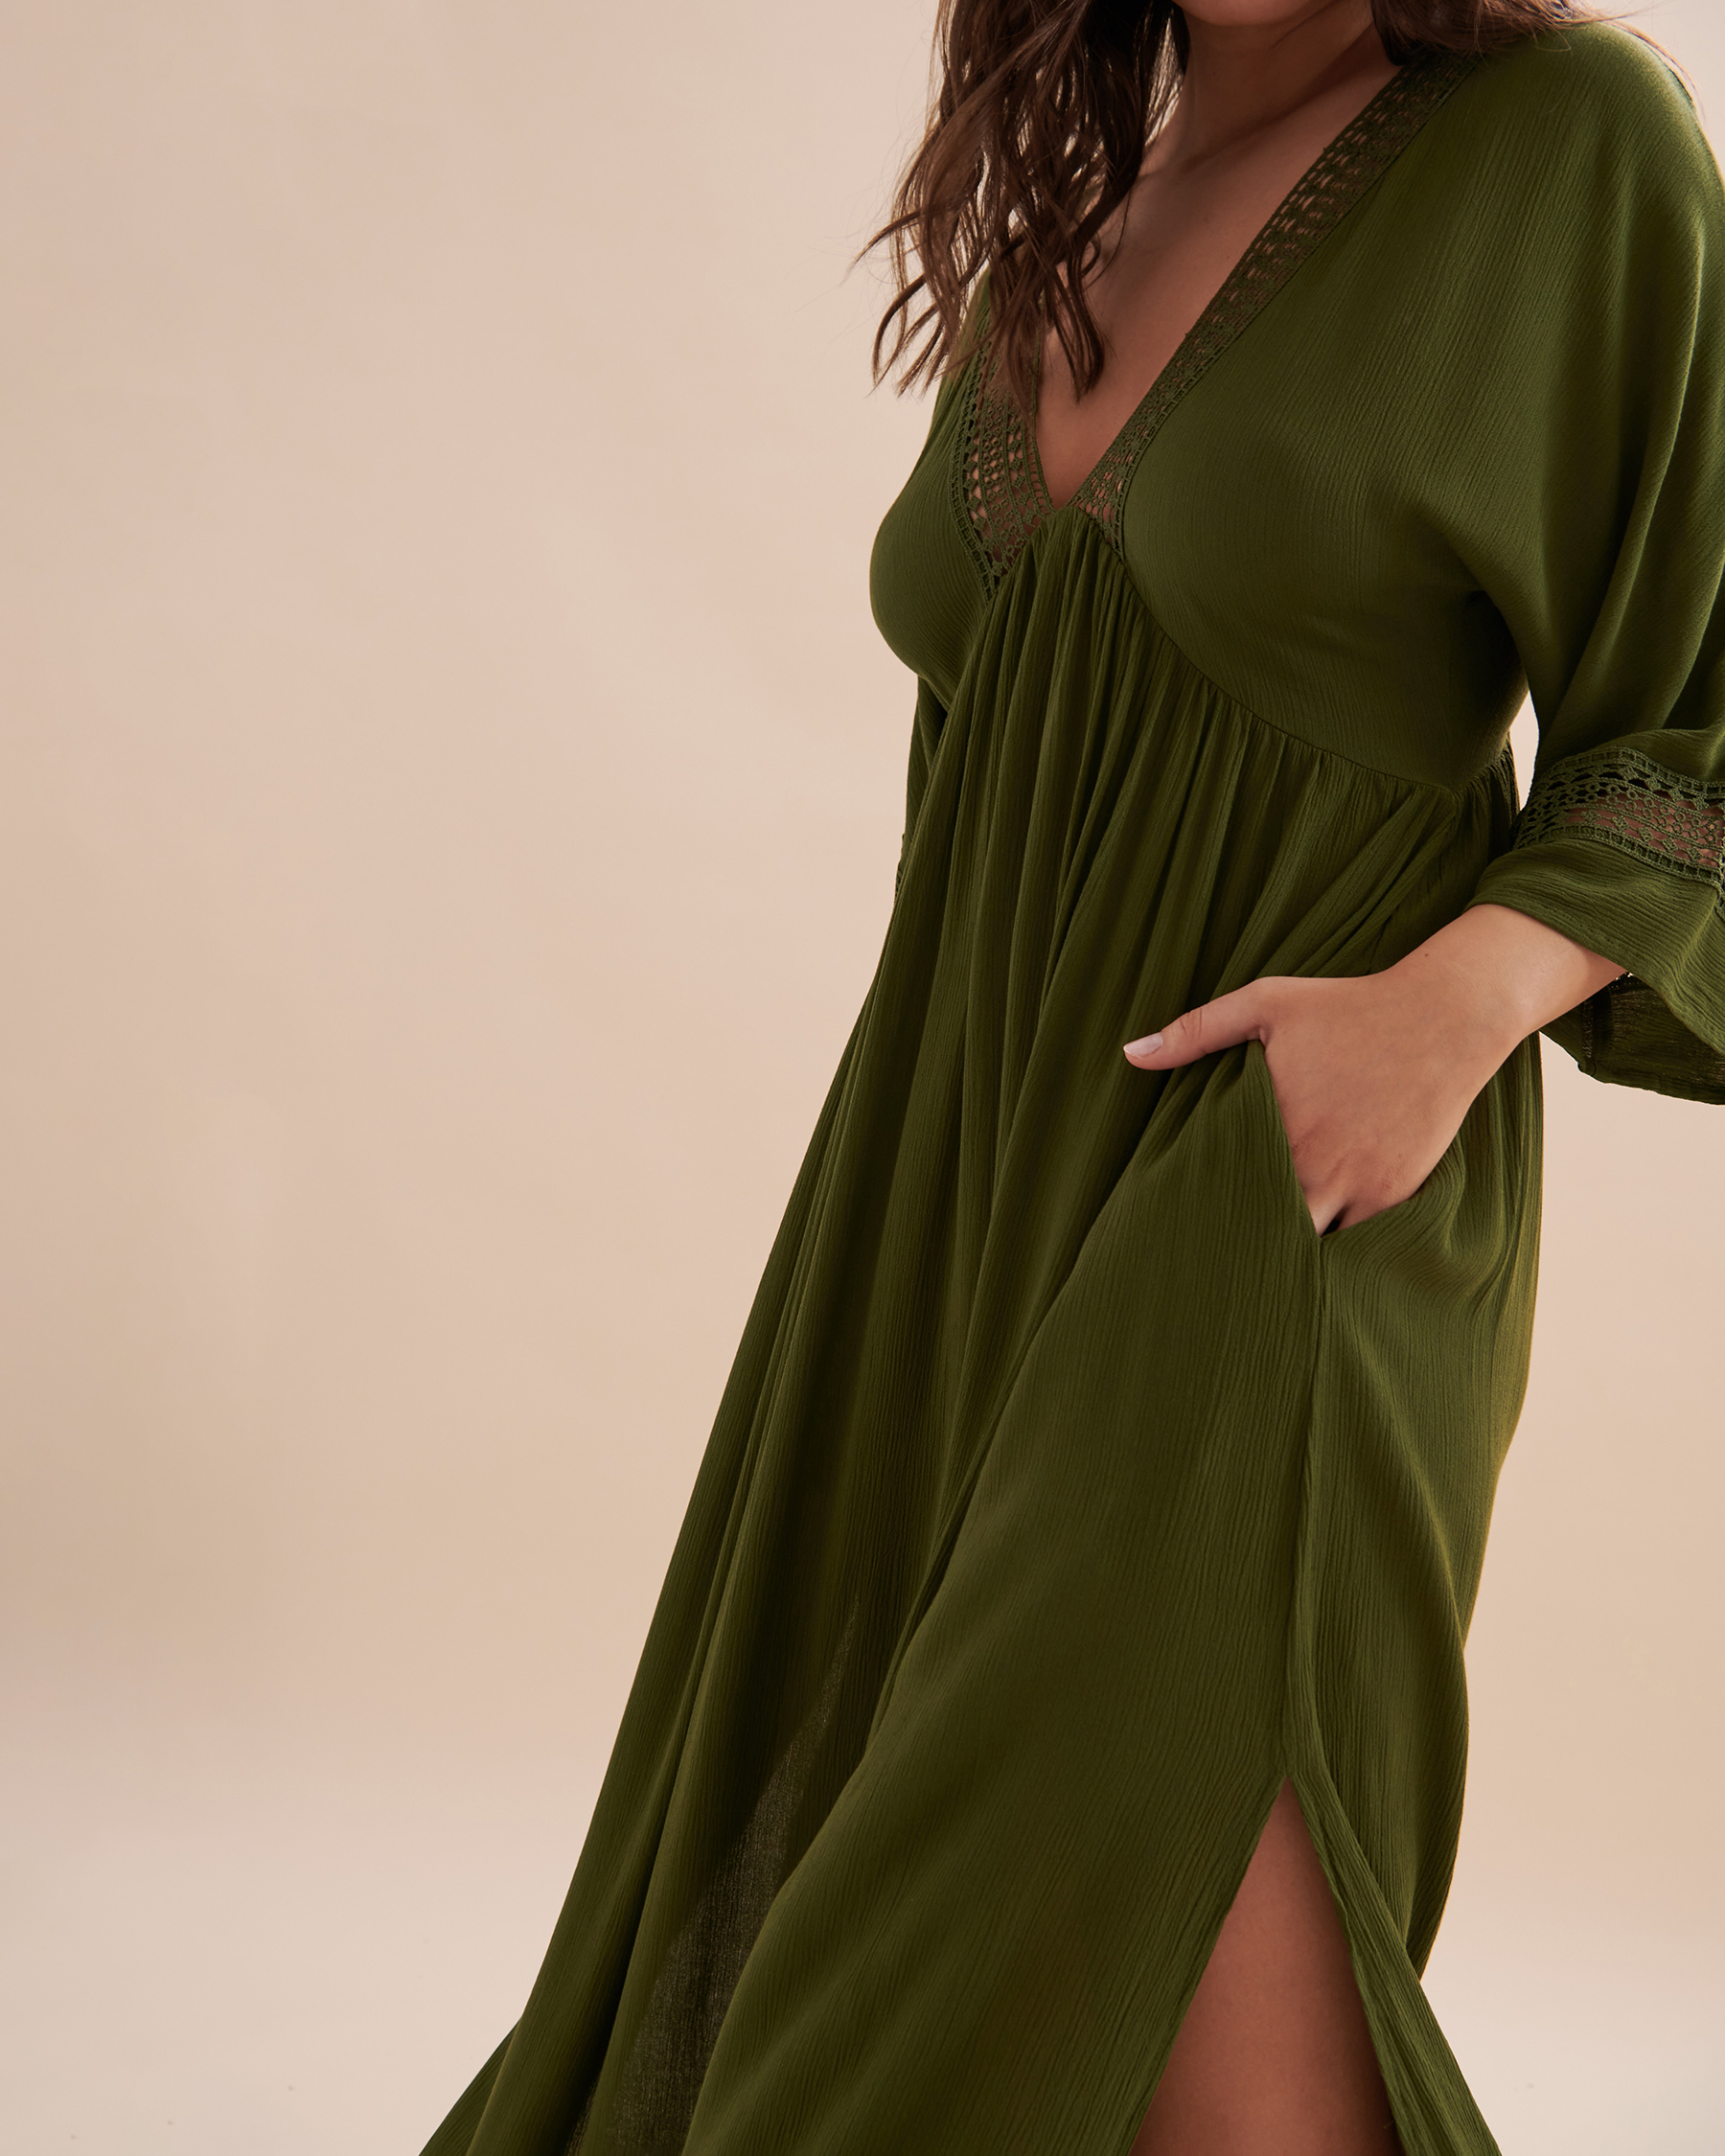 TURQUOISE COUTURE Robe maxi détail de crochet Olive 02300089 - Voir4